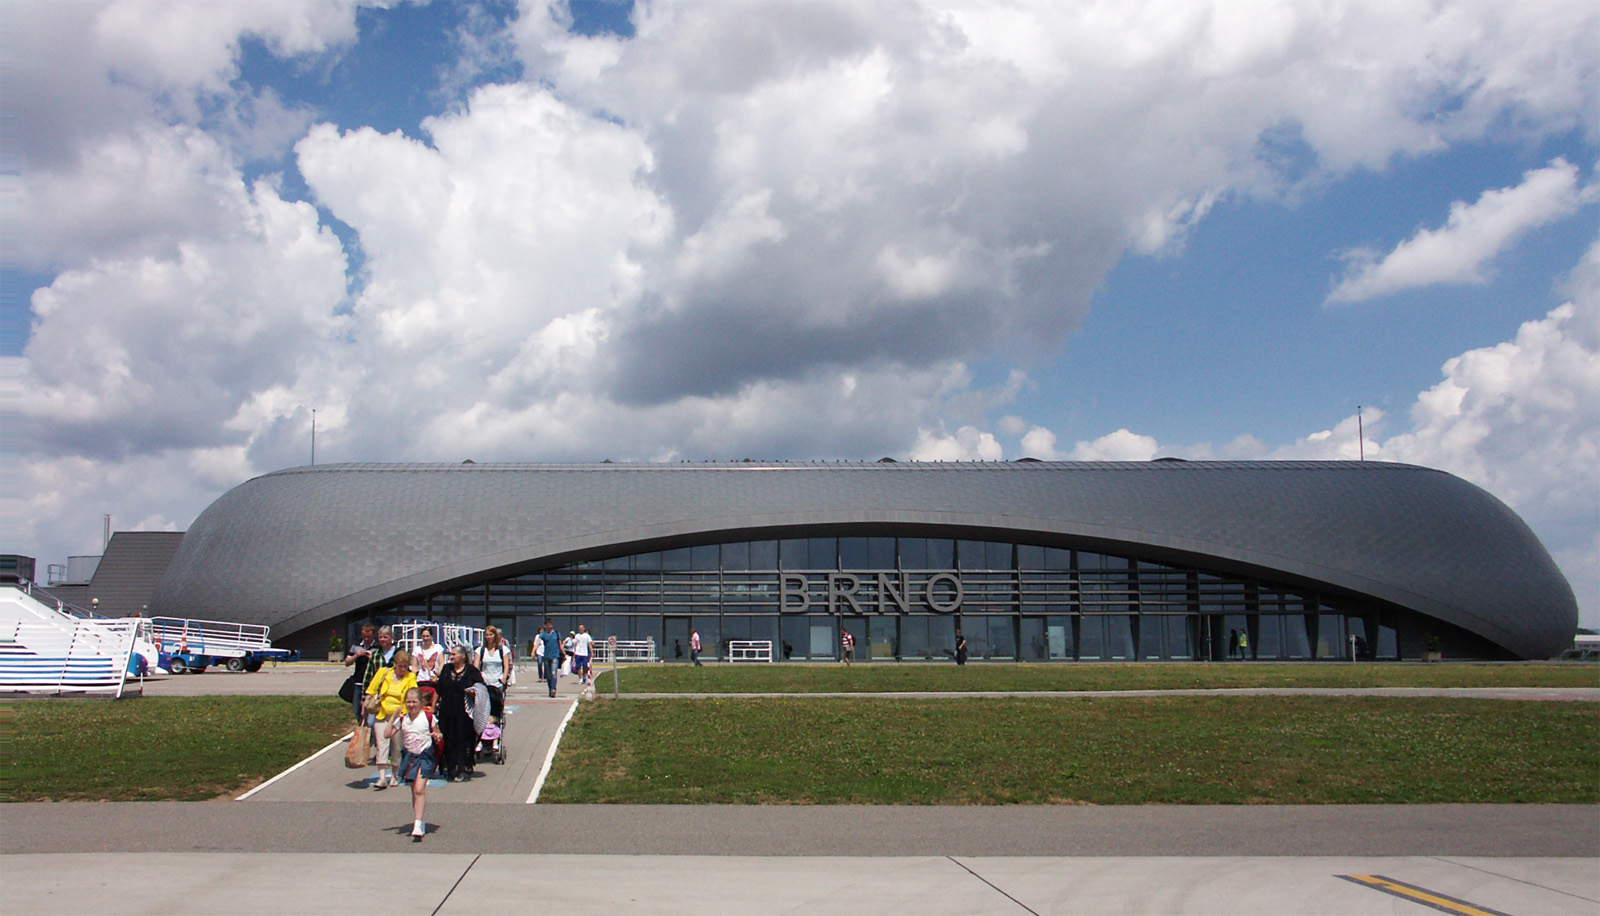 Letiště Brno hlásí za loňský rok téměř 472 tisíc odbavených cestujících. Letos očekává silnou sezónu i díky rozšířené nabídce nových sezónních destinací a další pravidelné lince